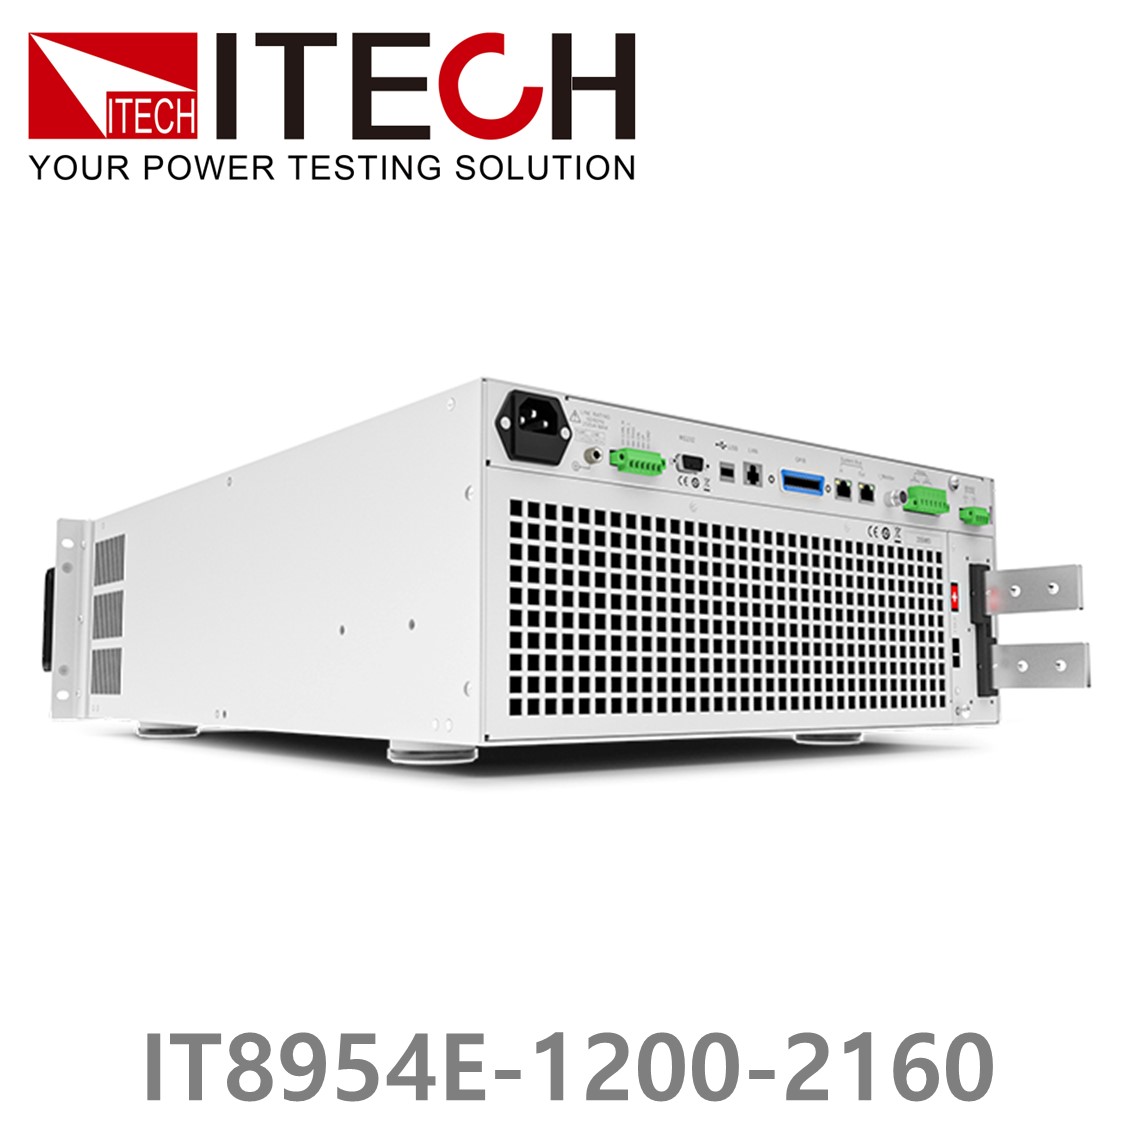 [ ITECH ] IT8954E-1200-2160  고성능 고전력 DC 전자로드 1200V/2160A/54kW (37U)